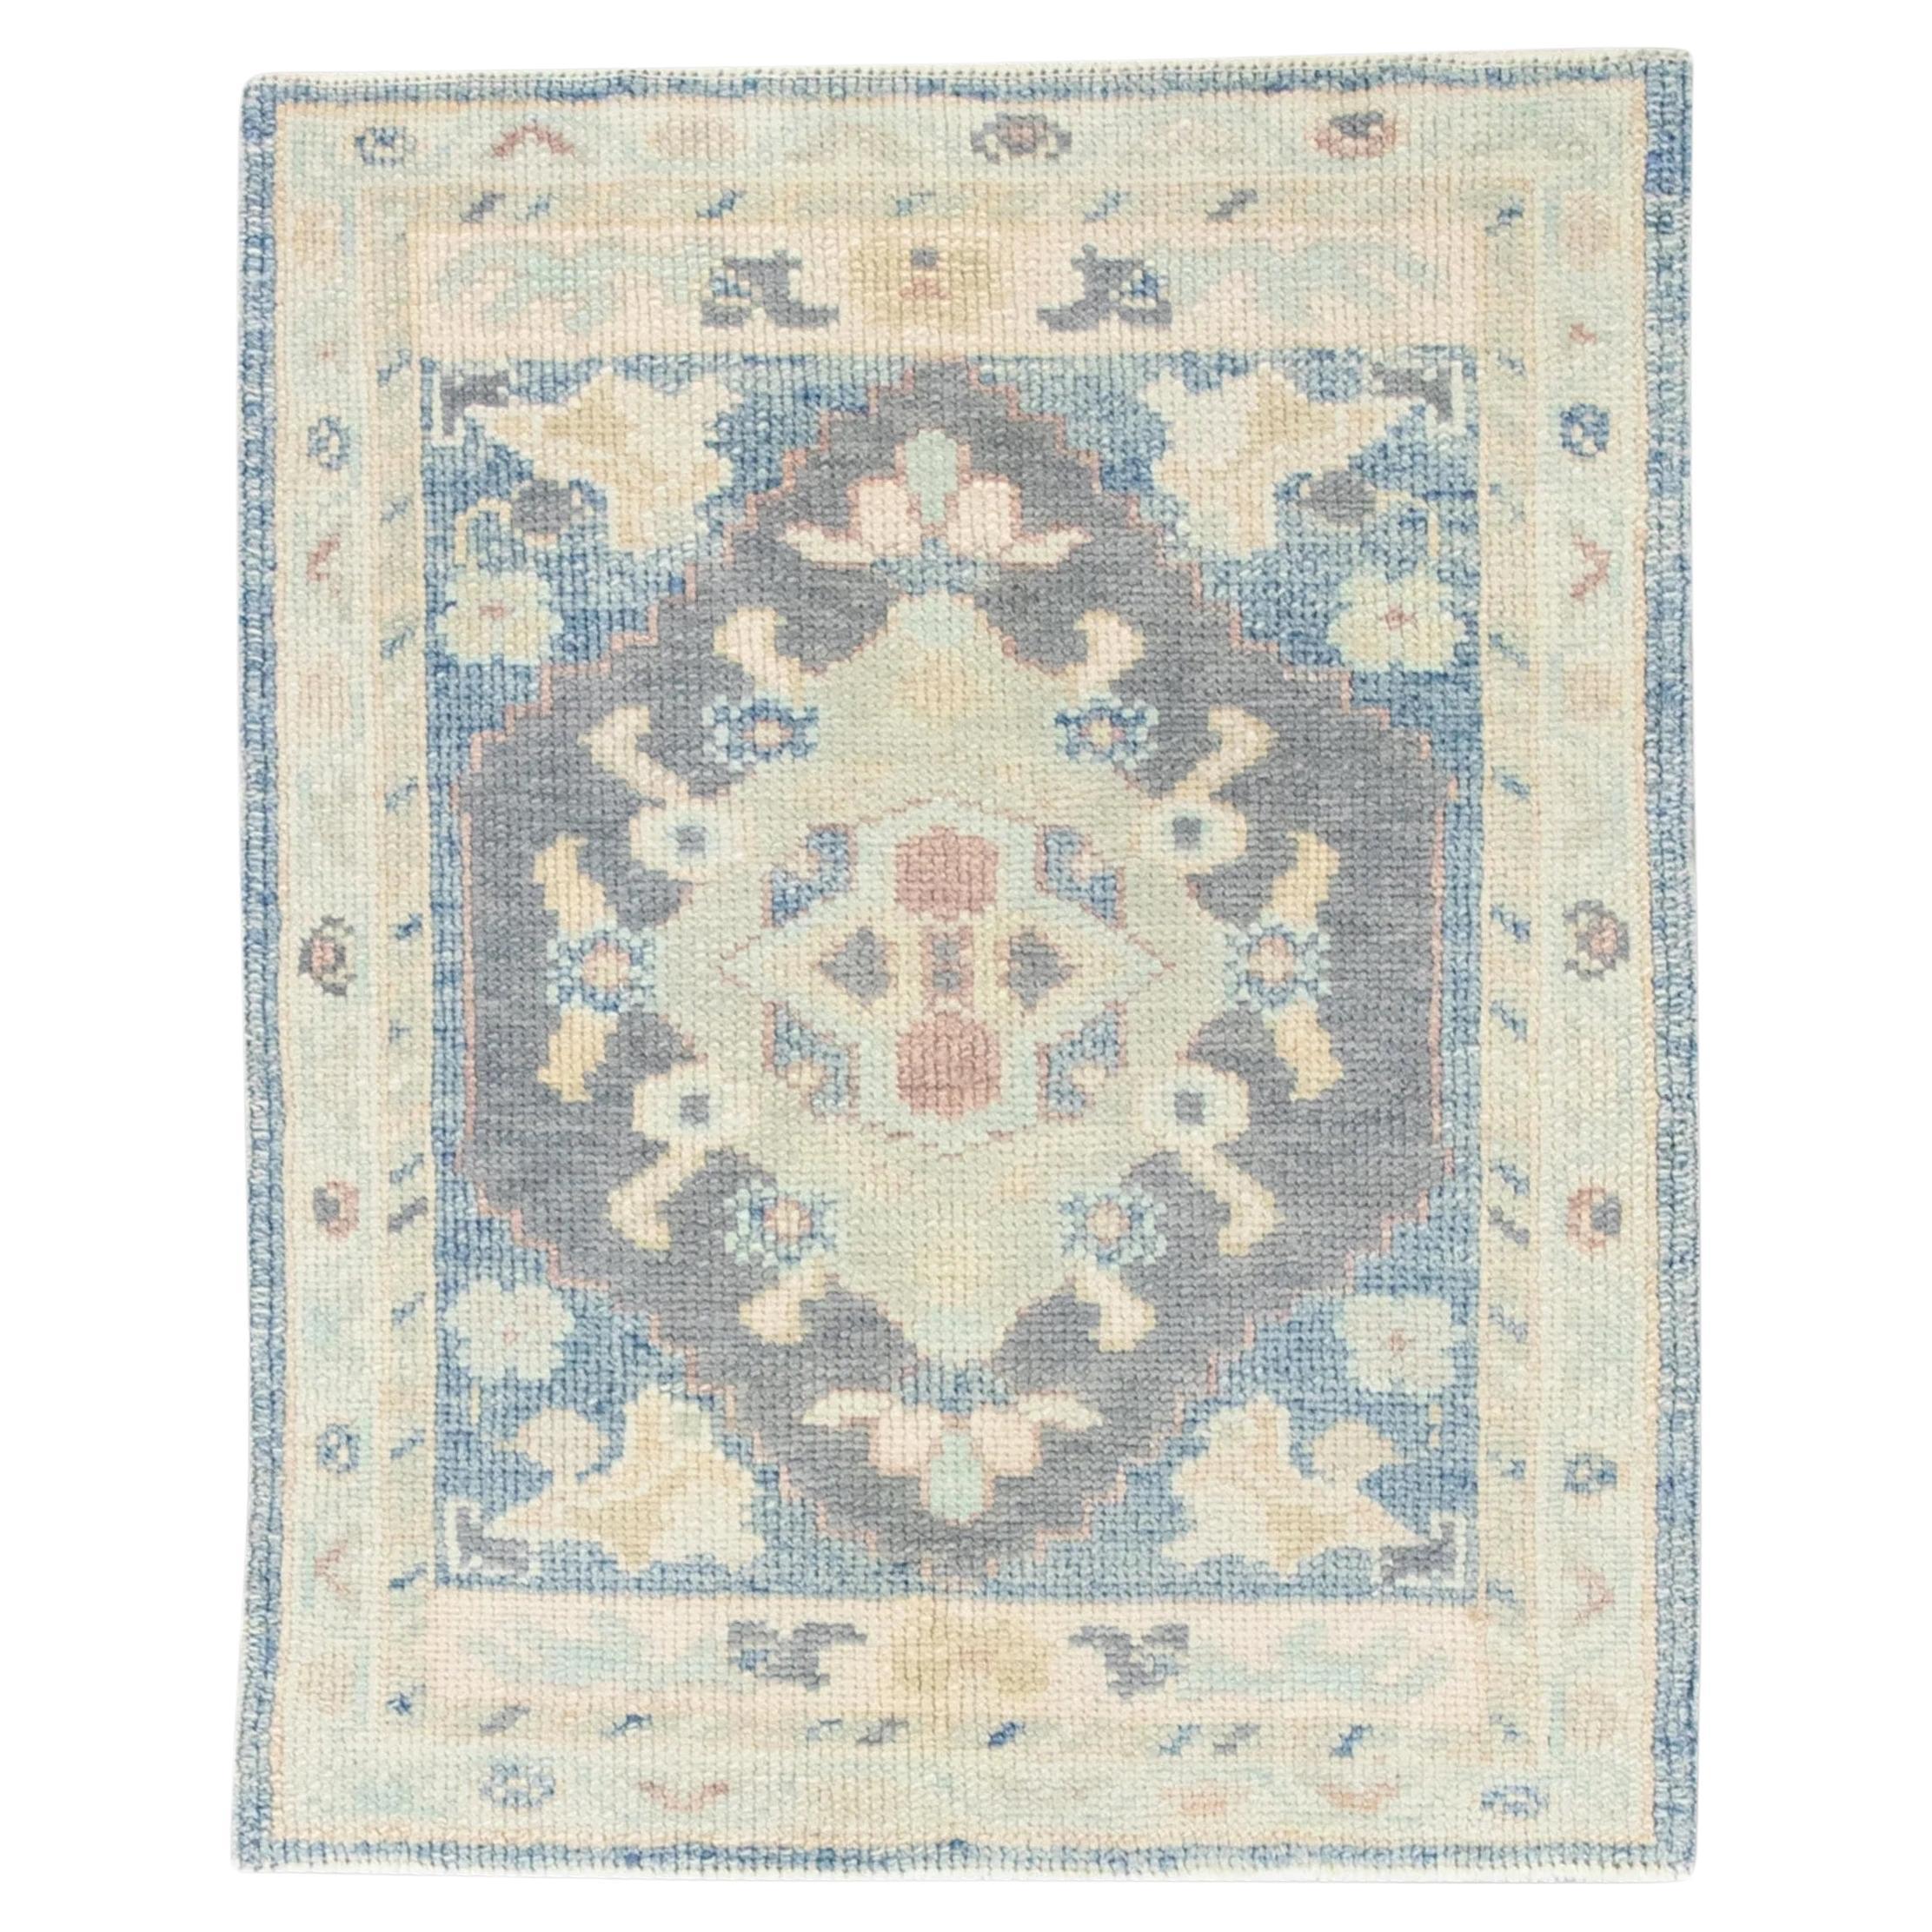 Türkischer Oushak-Teppich aus handgewebter Wolle in Grün und Blau mit Blumenmuster 2'4" x 2'11"